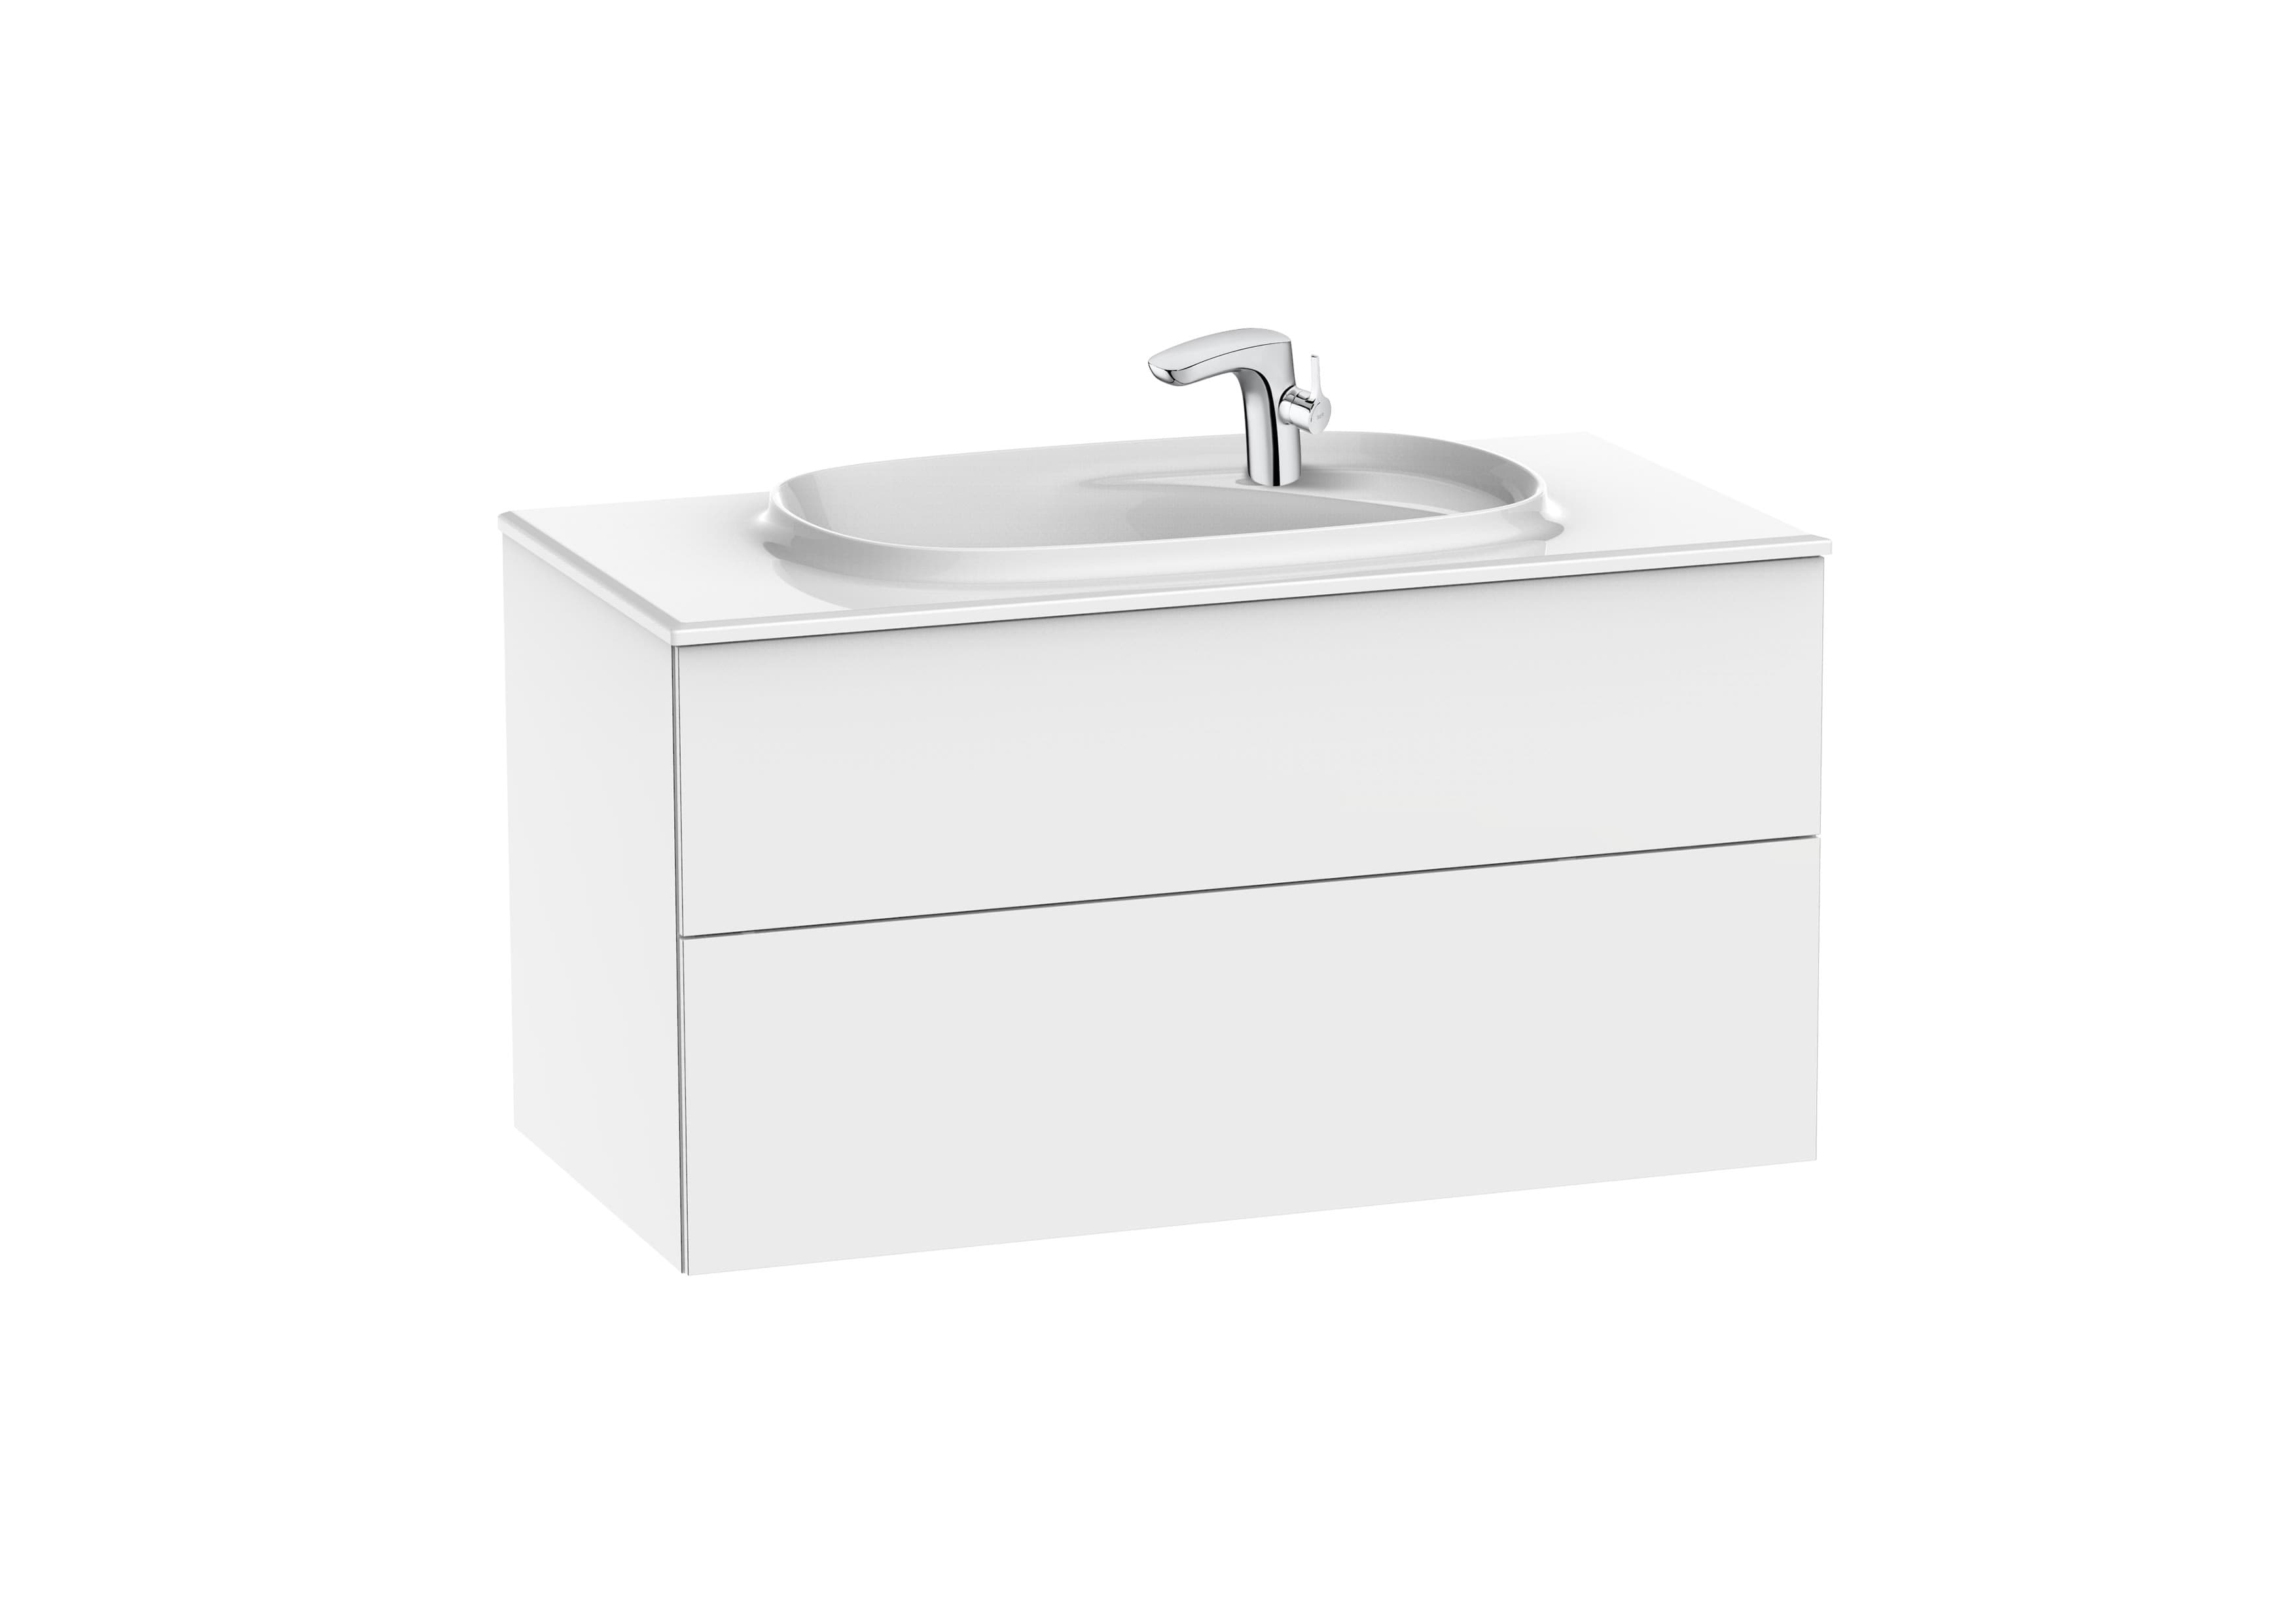 Sanitaire Meubles Salle de bain BEYOND A851358402 Unik ( ensemble meuble 2 tiroirs et lavabo ) Roca 2 - Mirage ceramica